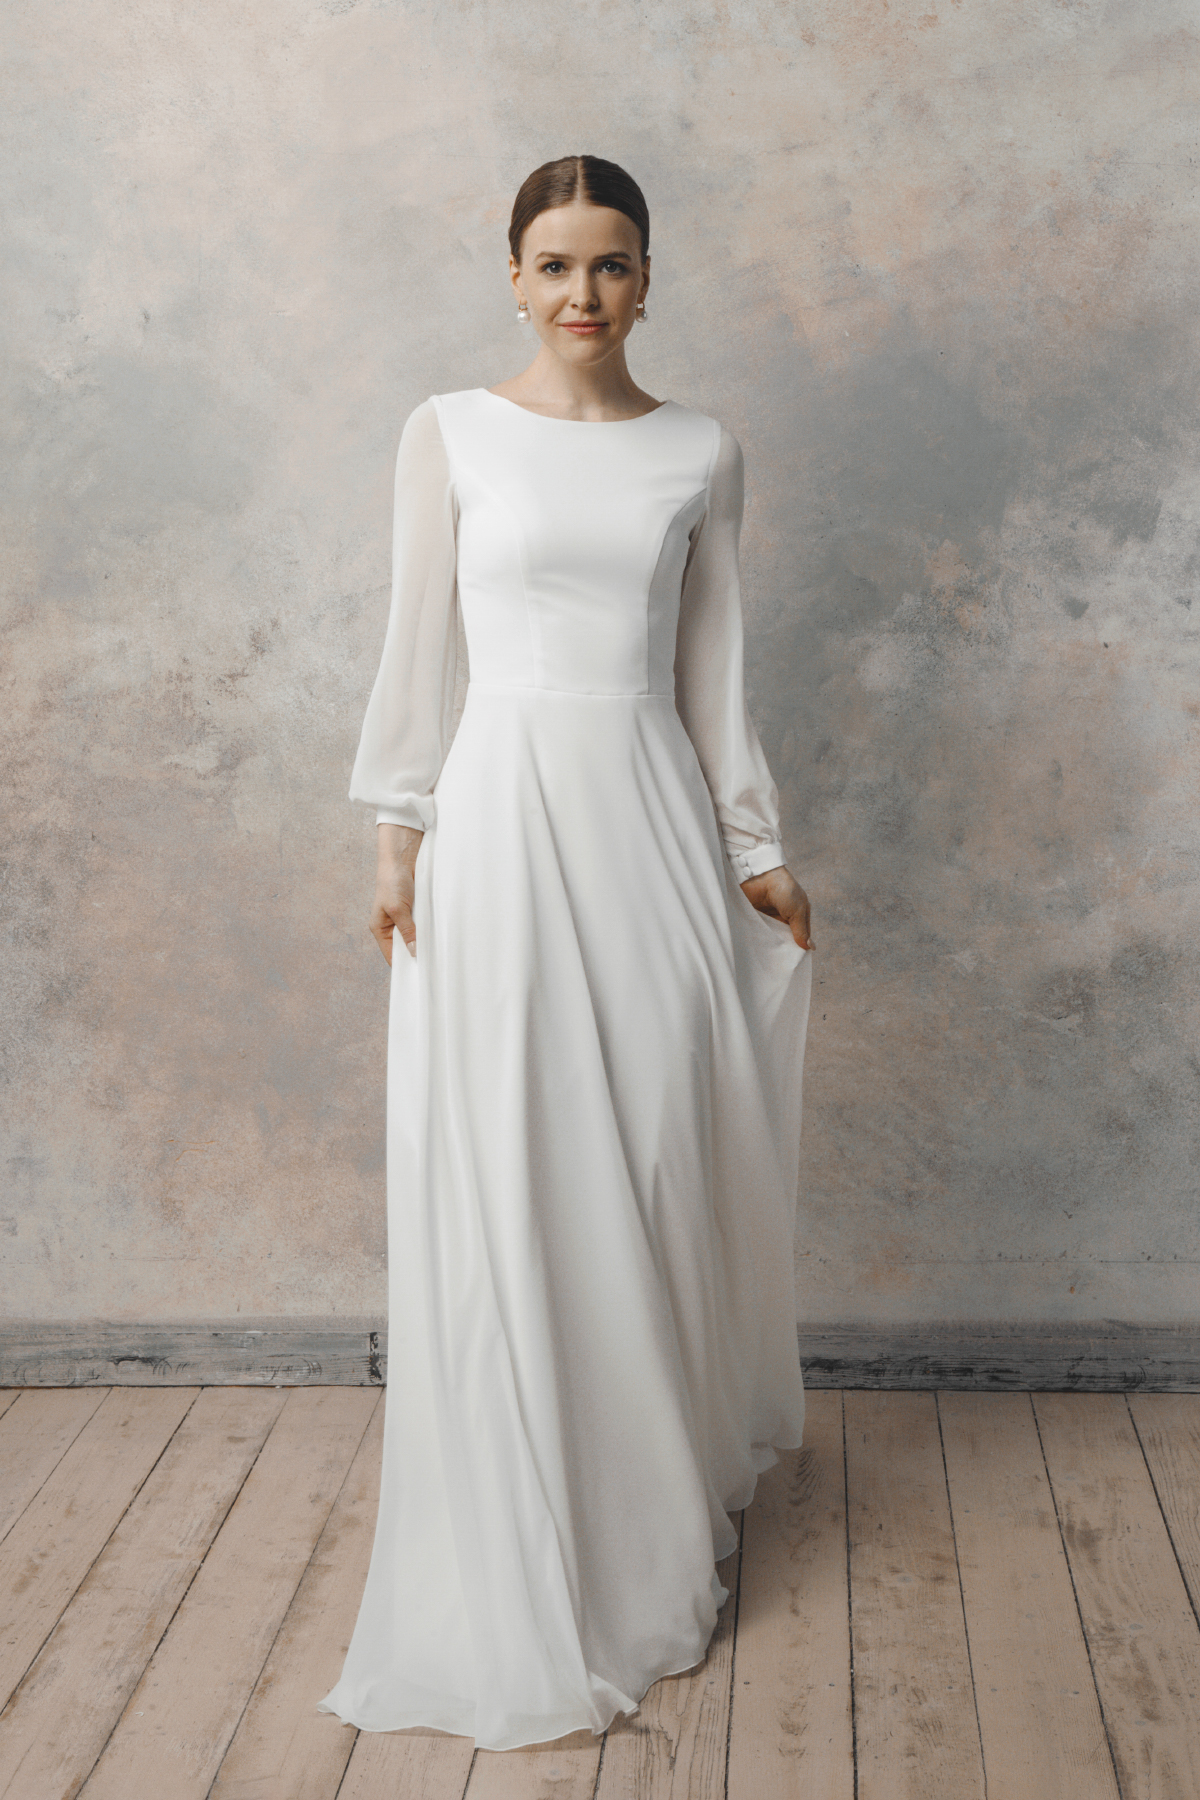 Modest long sleeve wedding dress